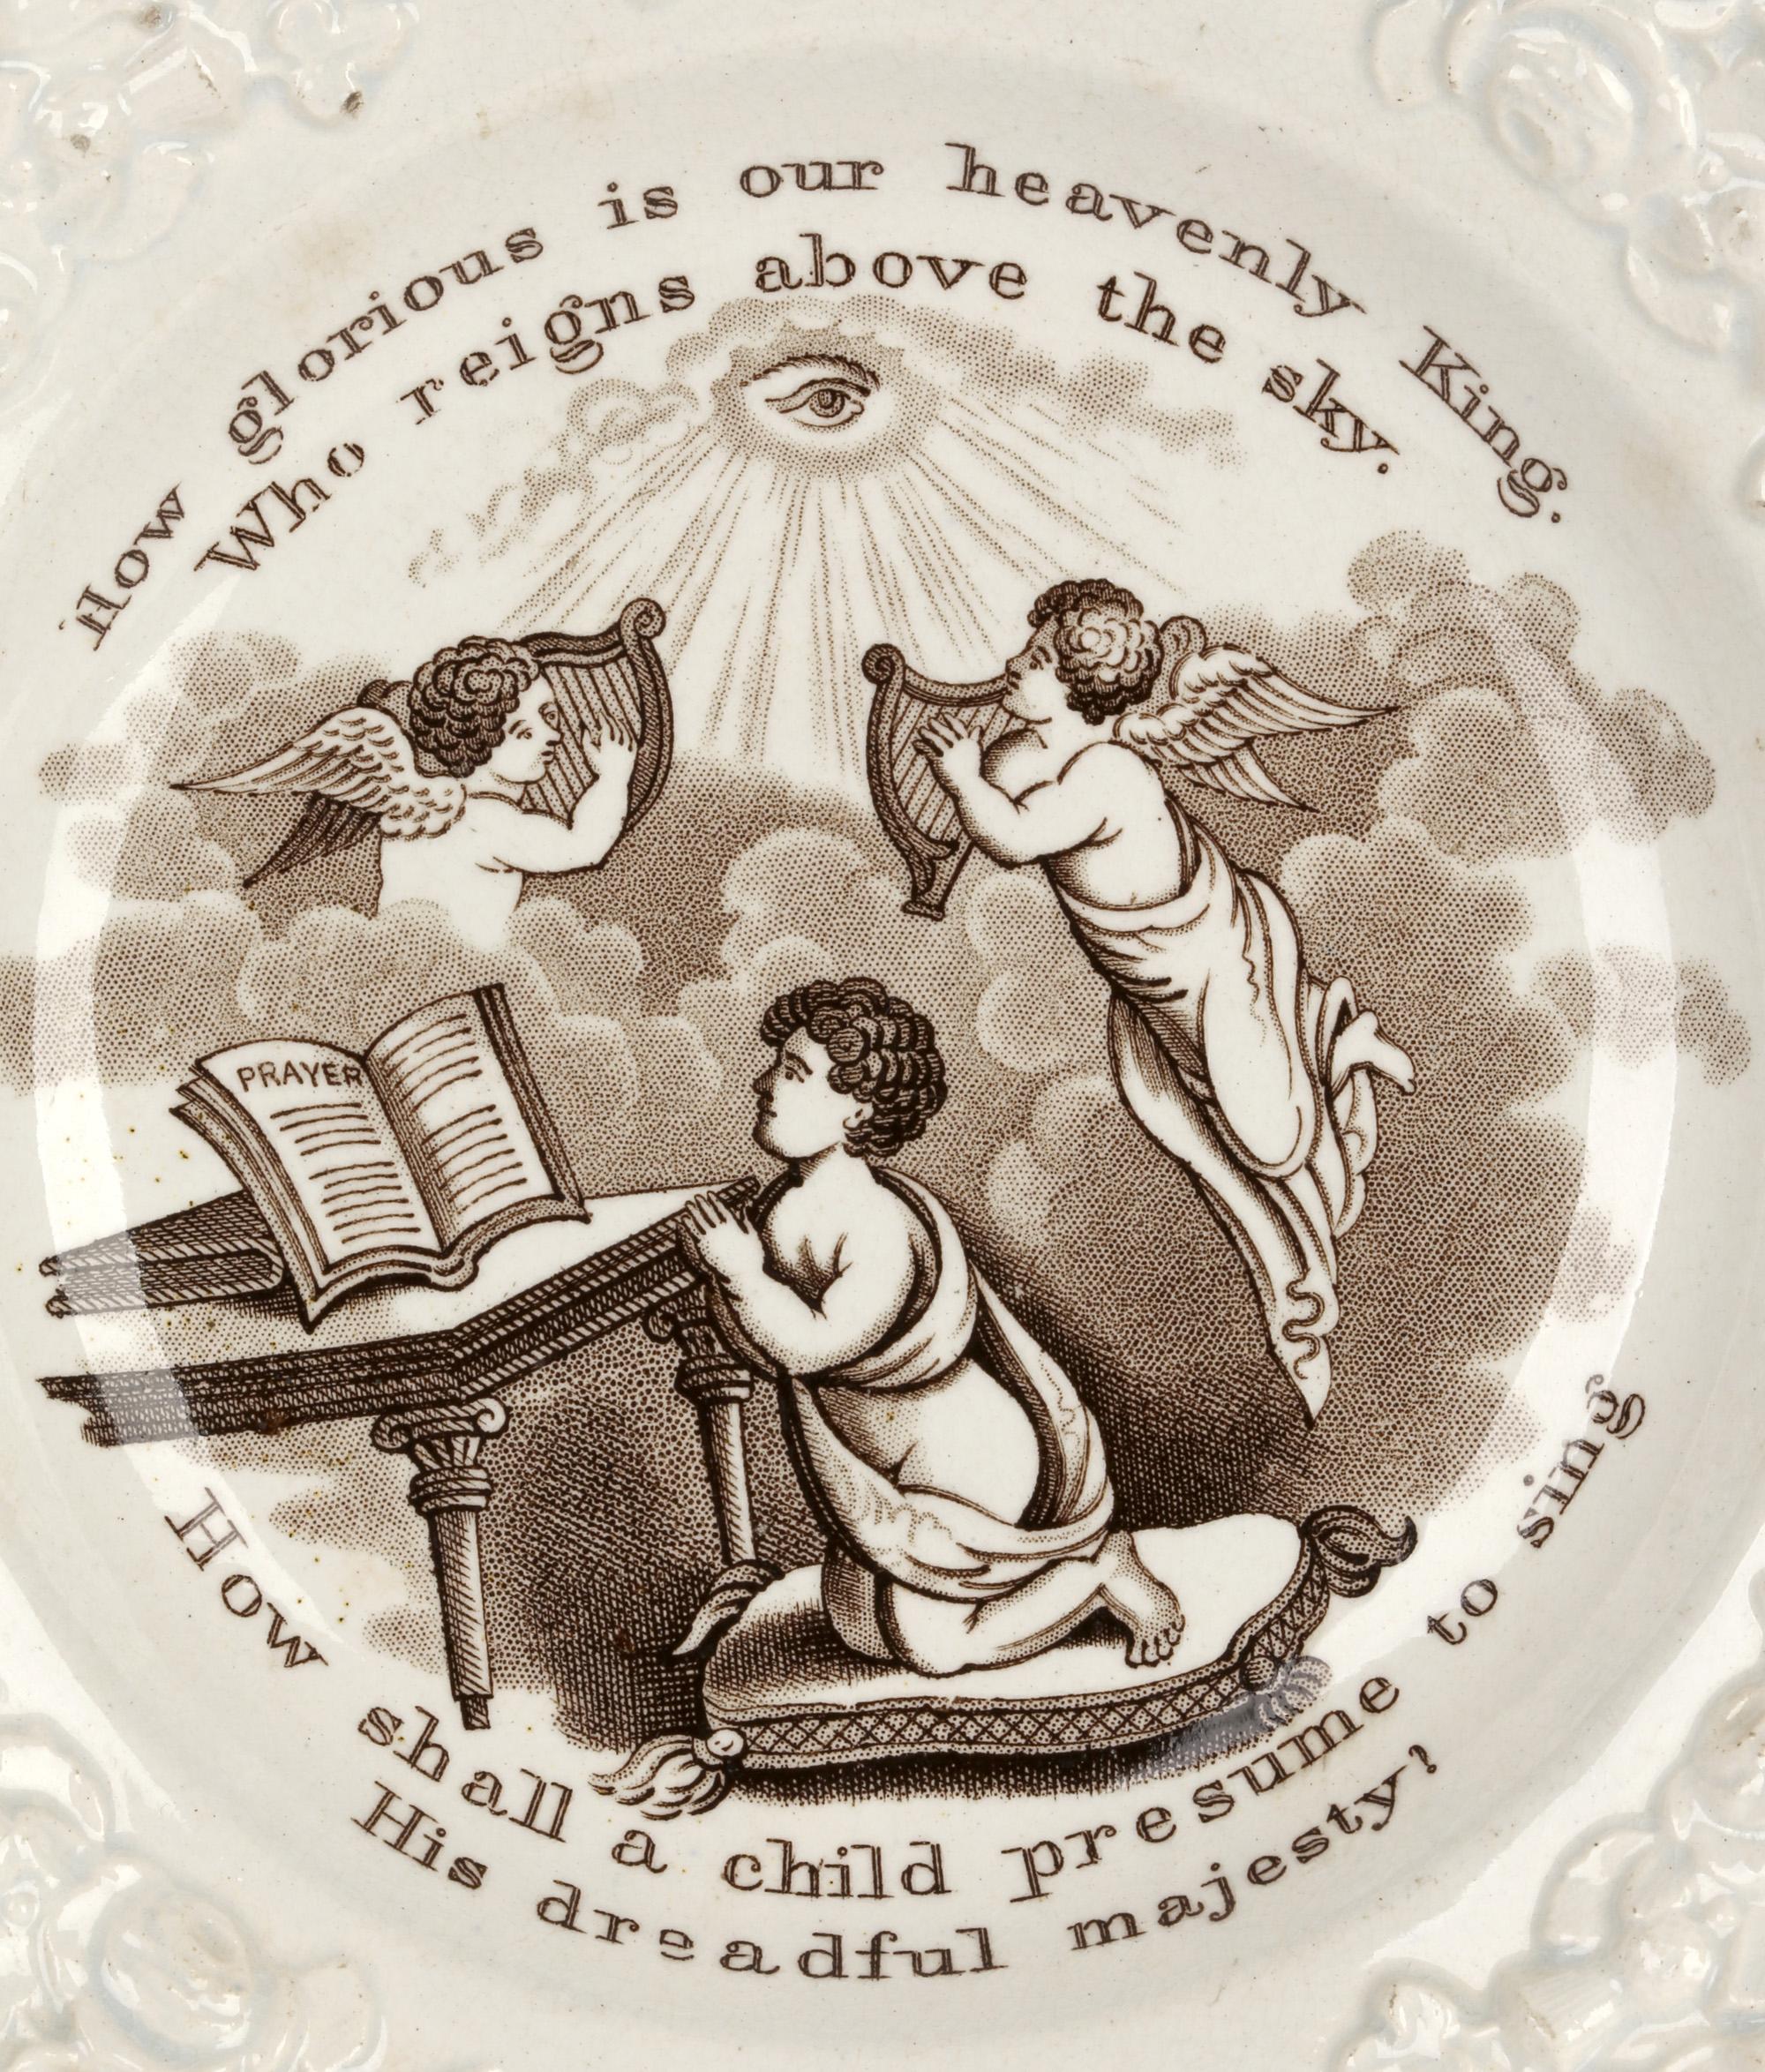 Zwei feine englische georgianische, wahrscheinlich Staffordshire, Kinderteller aus Perlenware mit religiösen Szenen und Versen aus dem frühen 19. Jahrhundert. Die fein getöpferten Teller haben beide eine achteckige Form mit reliefierten Frucht- und